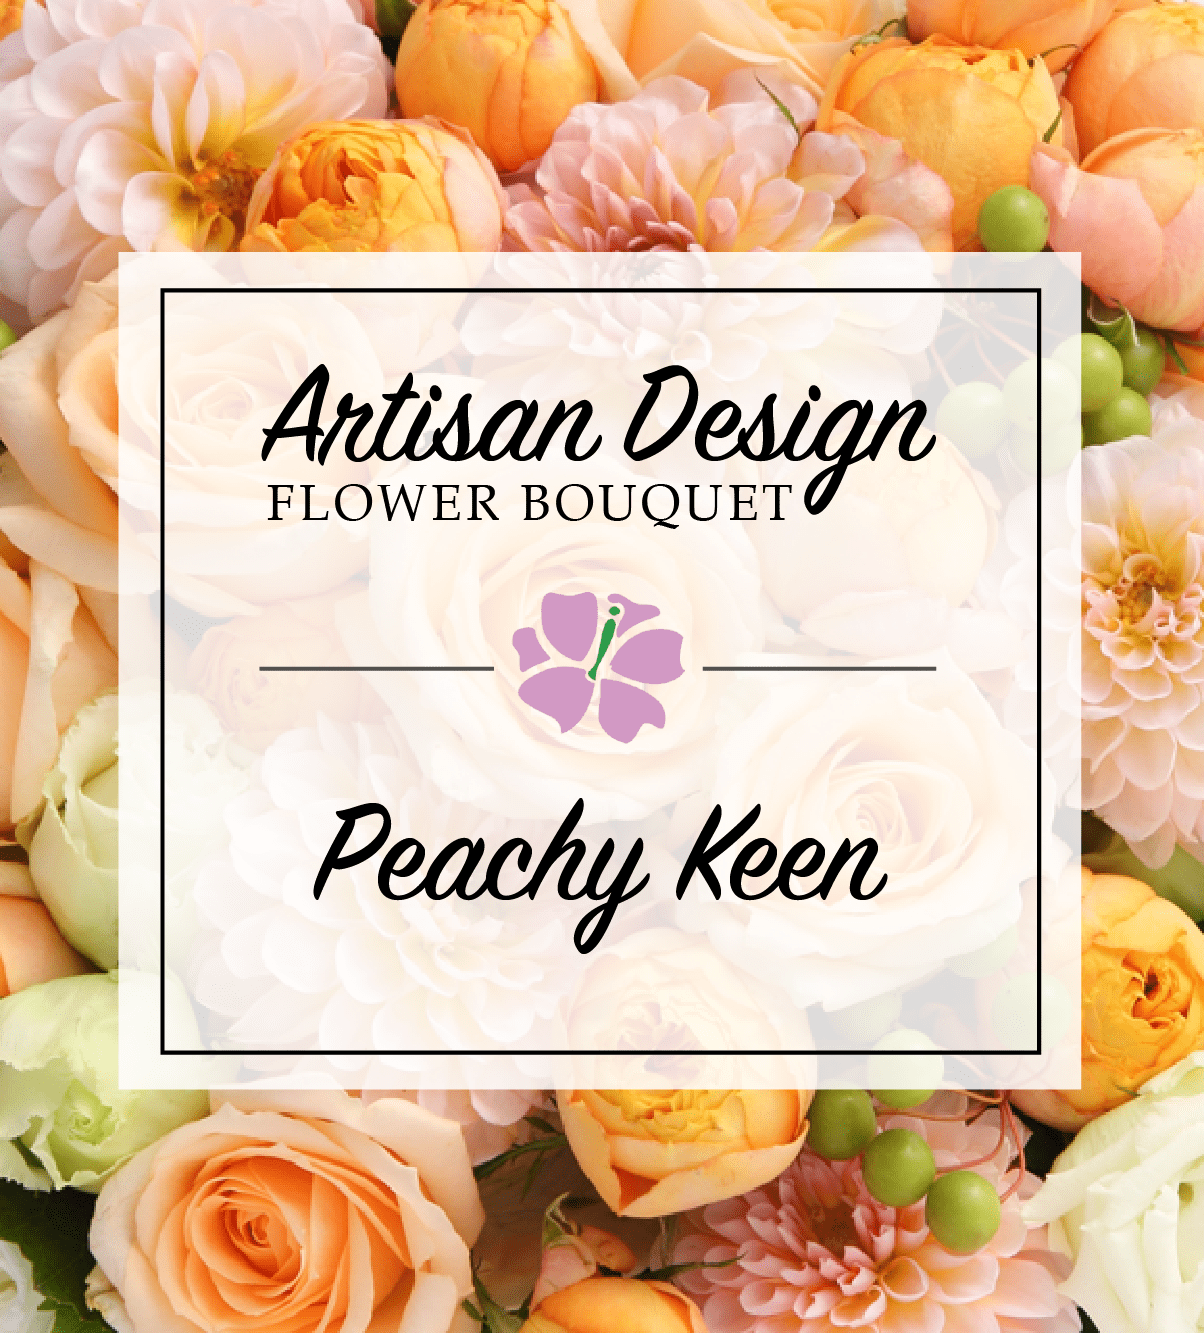 Artist's Design: Peachy Keen